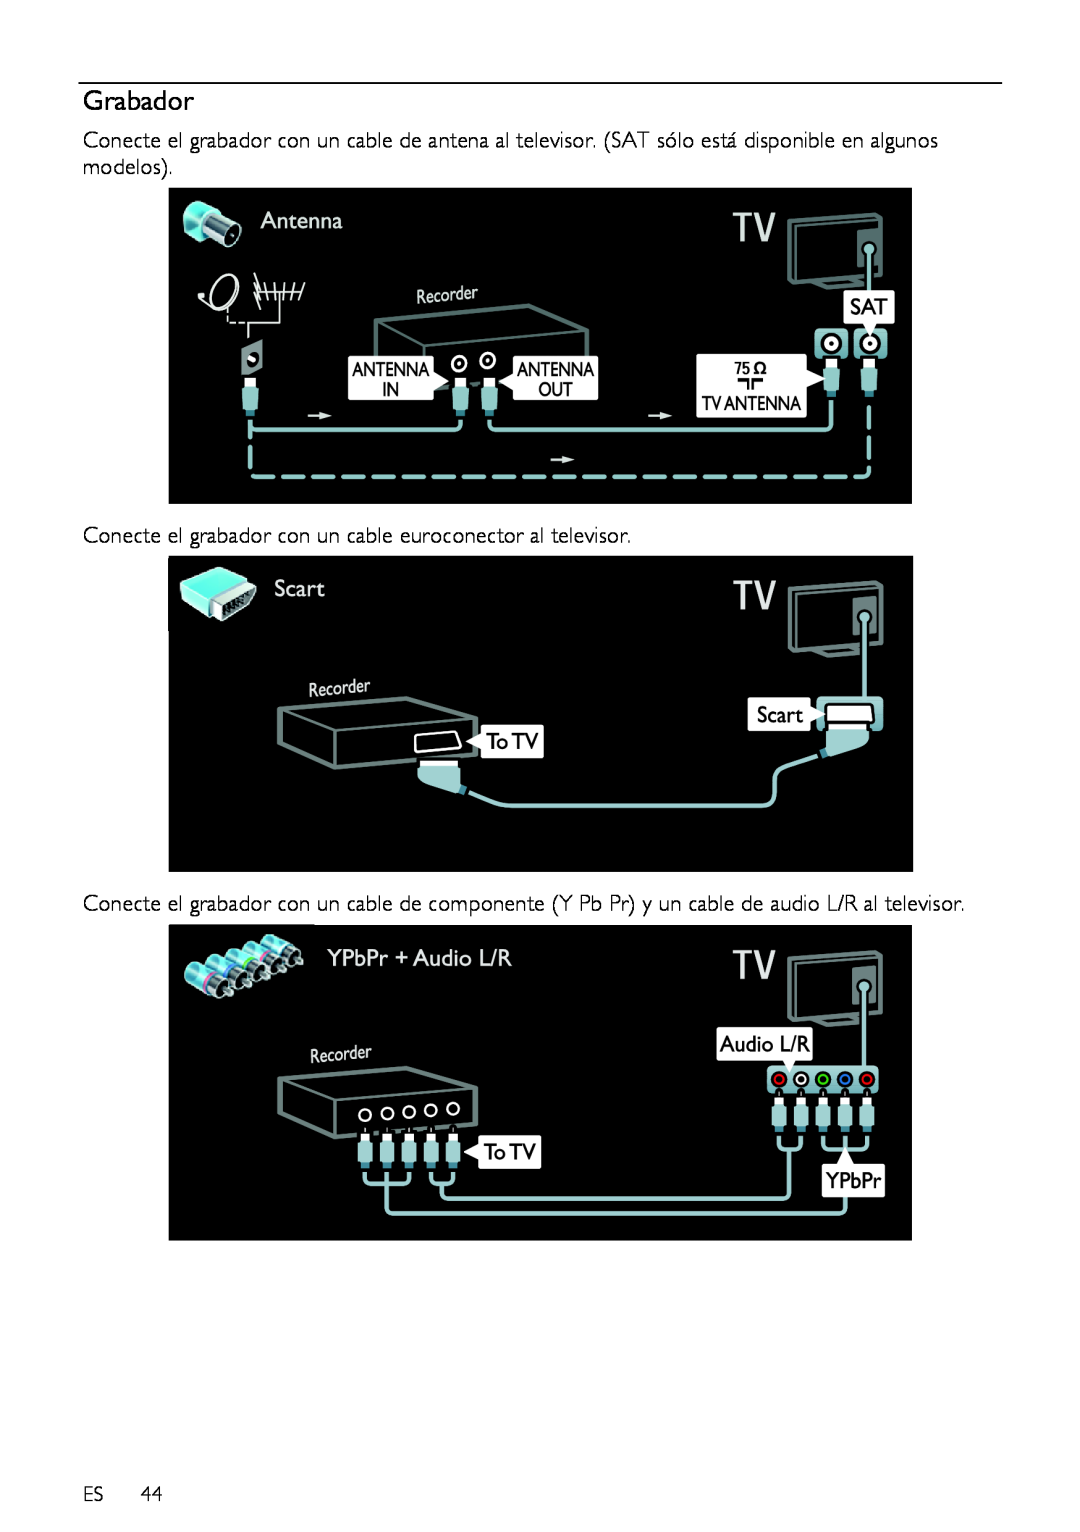 Sharp LE630RU, LX632E, LX630E, LU630E, LU632E, LE630E Grabador, Conecte el grabador con un cable euroconector al televisor 